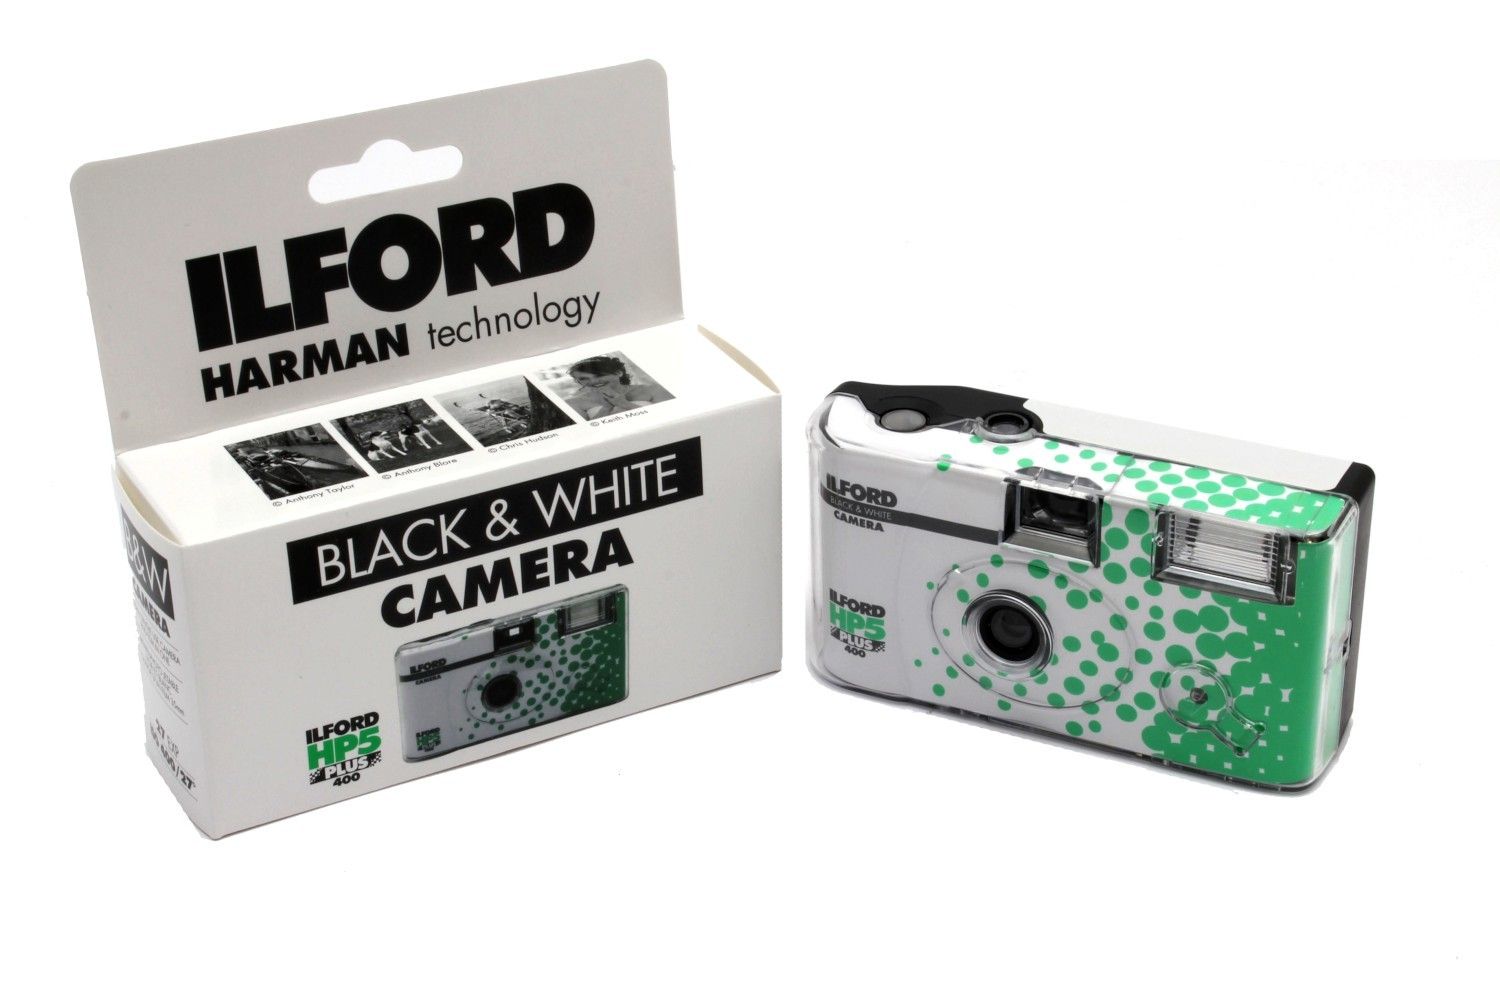 ILFORD cámara desechable HP5 400 ISO - 27 exp. (B&W) - Foto R3, film lab y  fotografía analógica